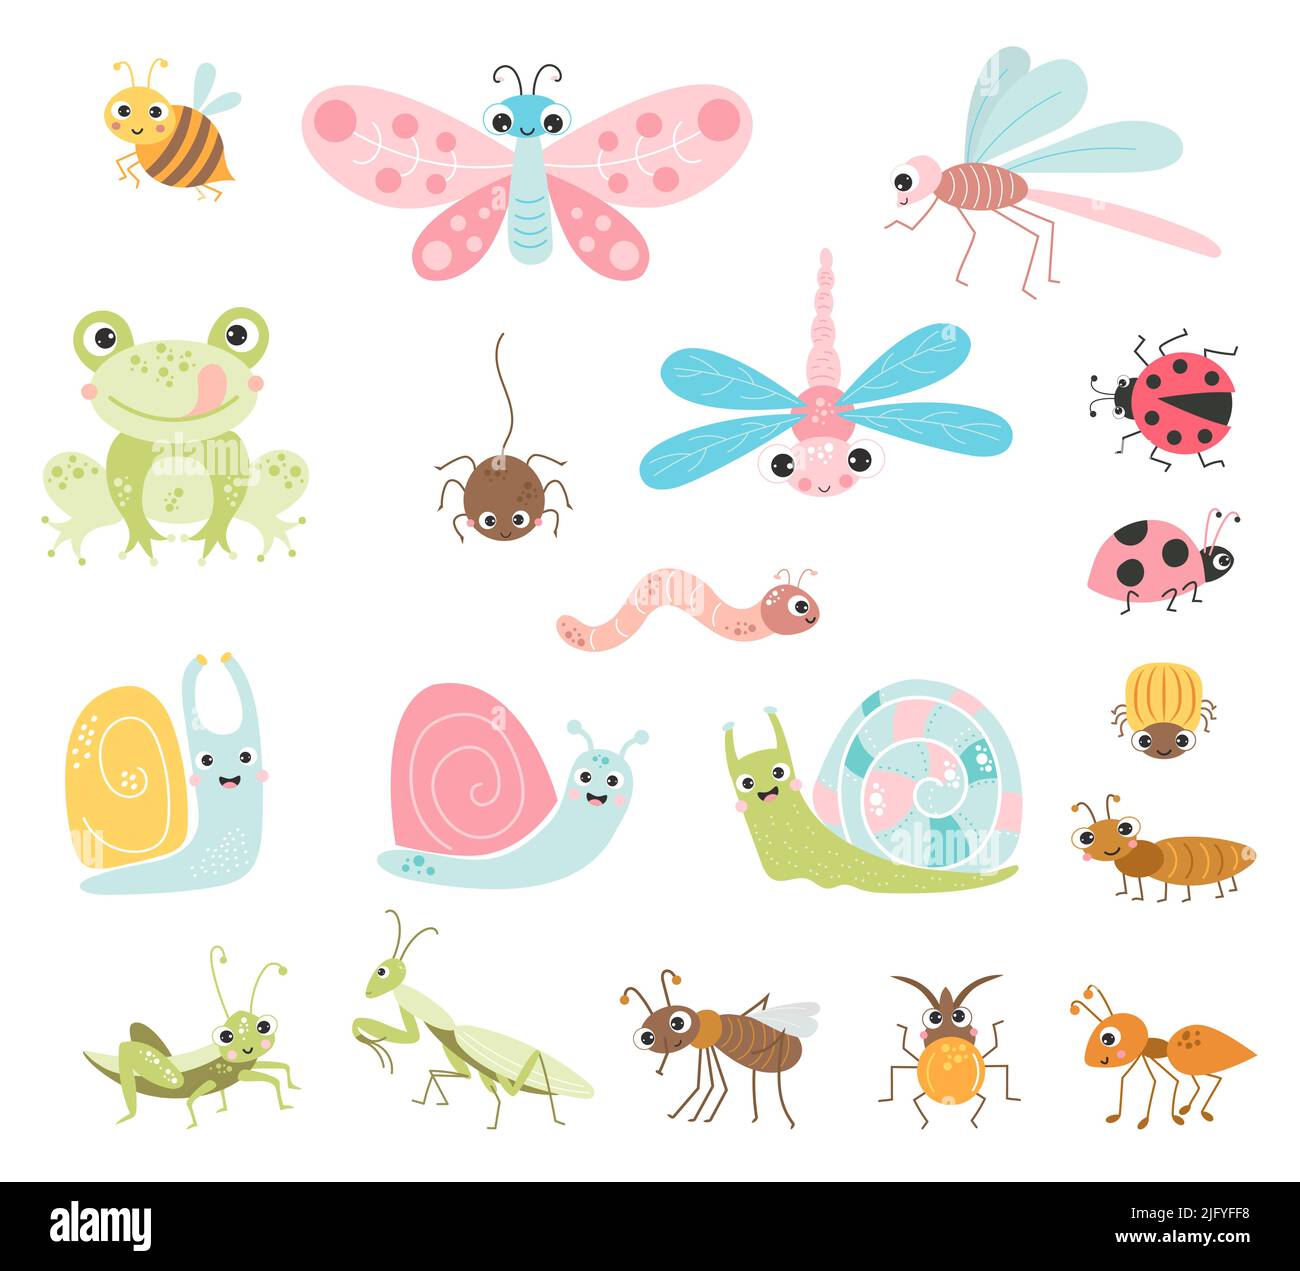 Set vettoriale di insetti carini. Personaggi divertenti di insetti, scarabei e artropodi invertebrati, volanti e striscianti, benefici e parassiti. Isolato elem Illustrazione Vettoriale